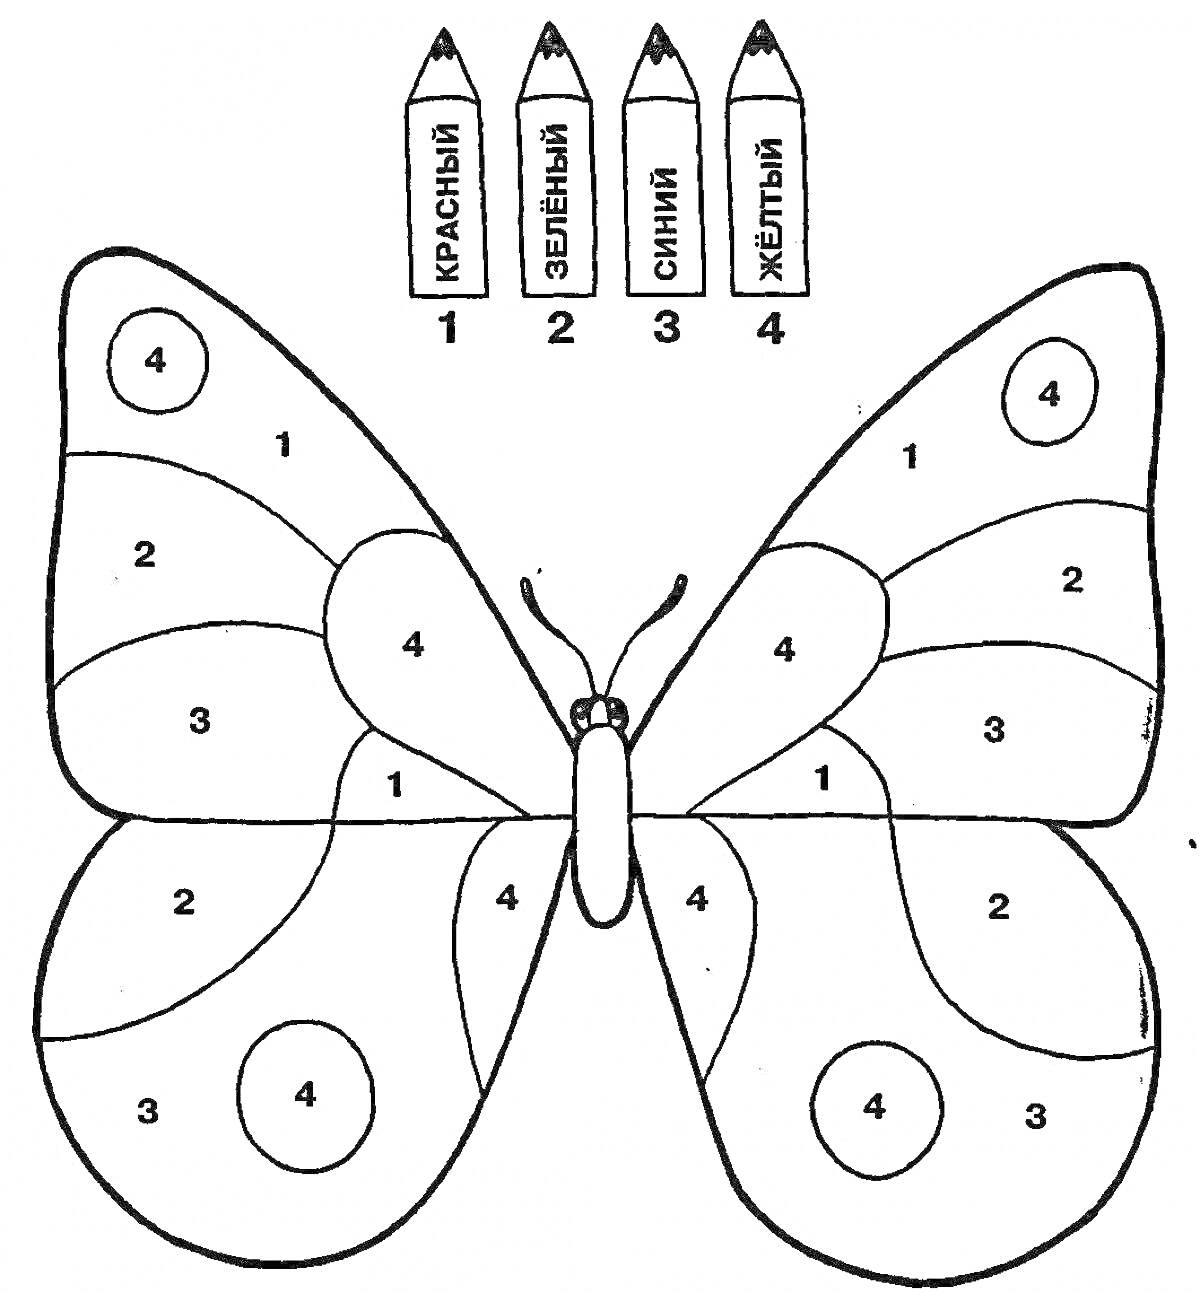 Раскраска Схема раскраски бабочки с номерами и цветами (красный, зелёный, синий, жёлтый)